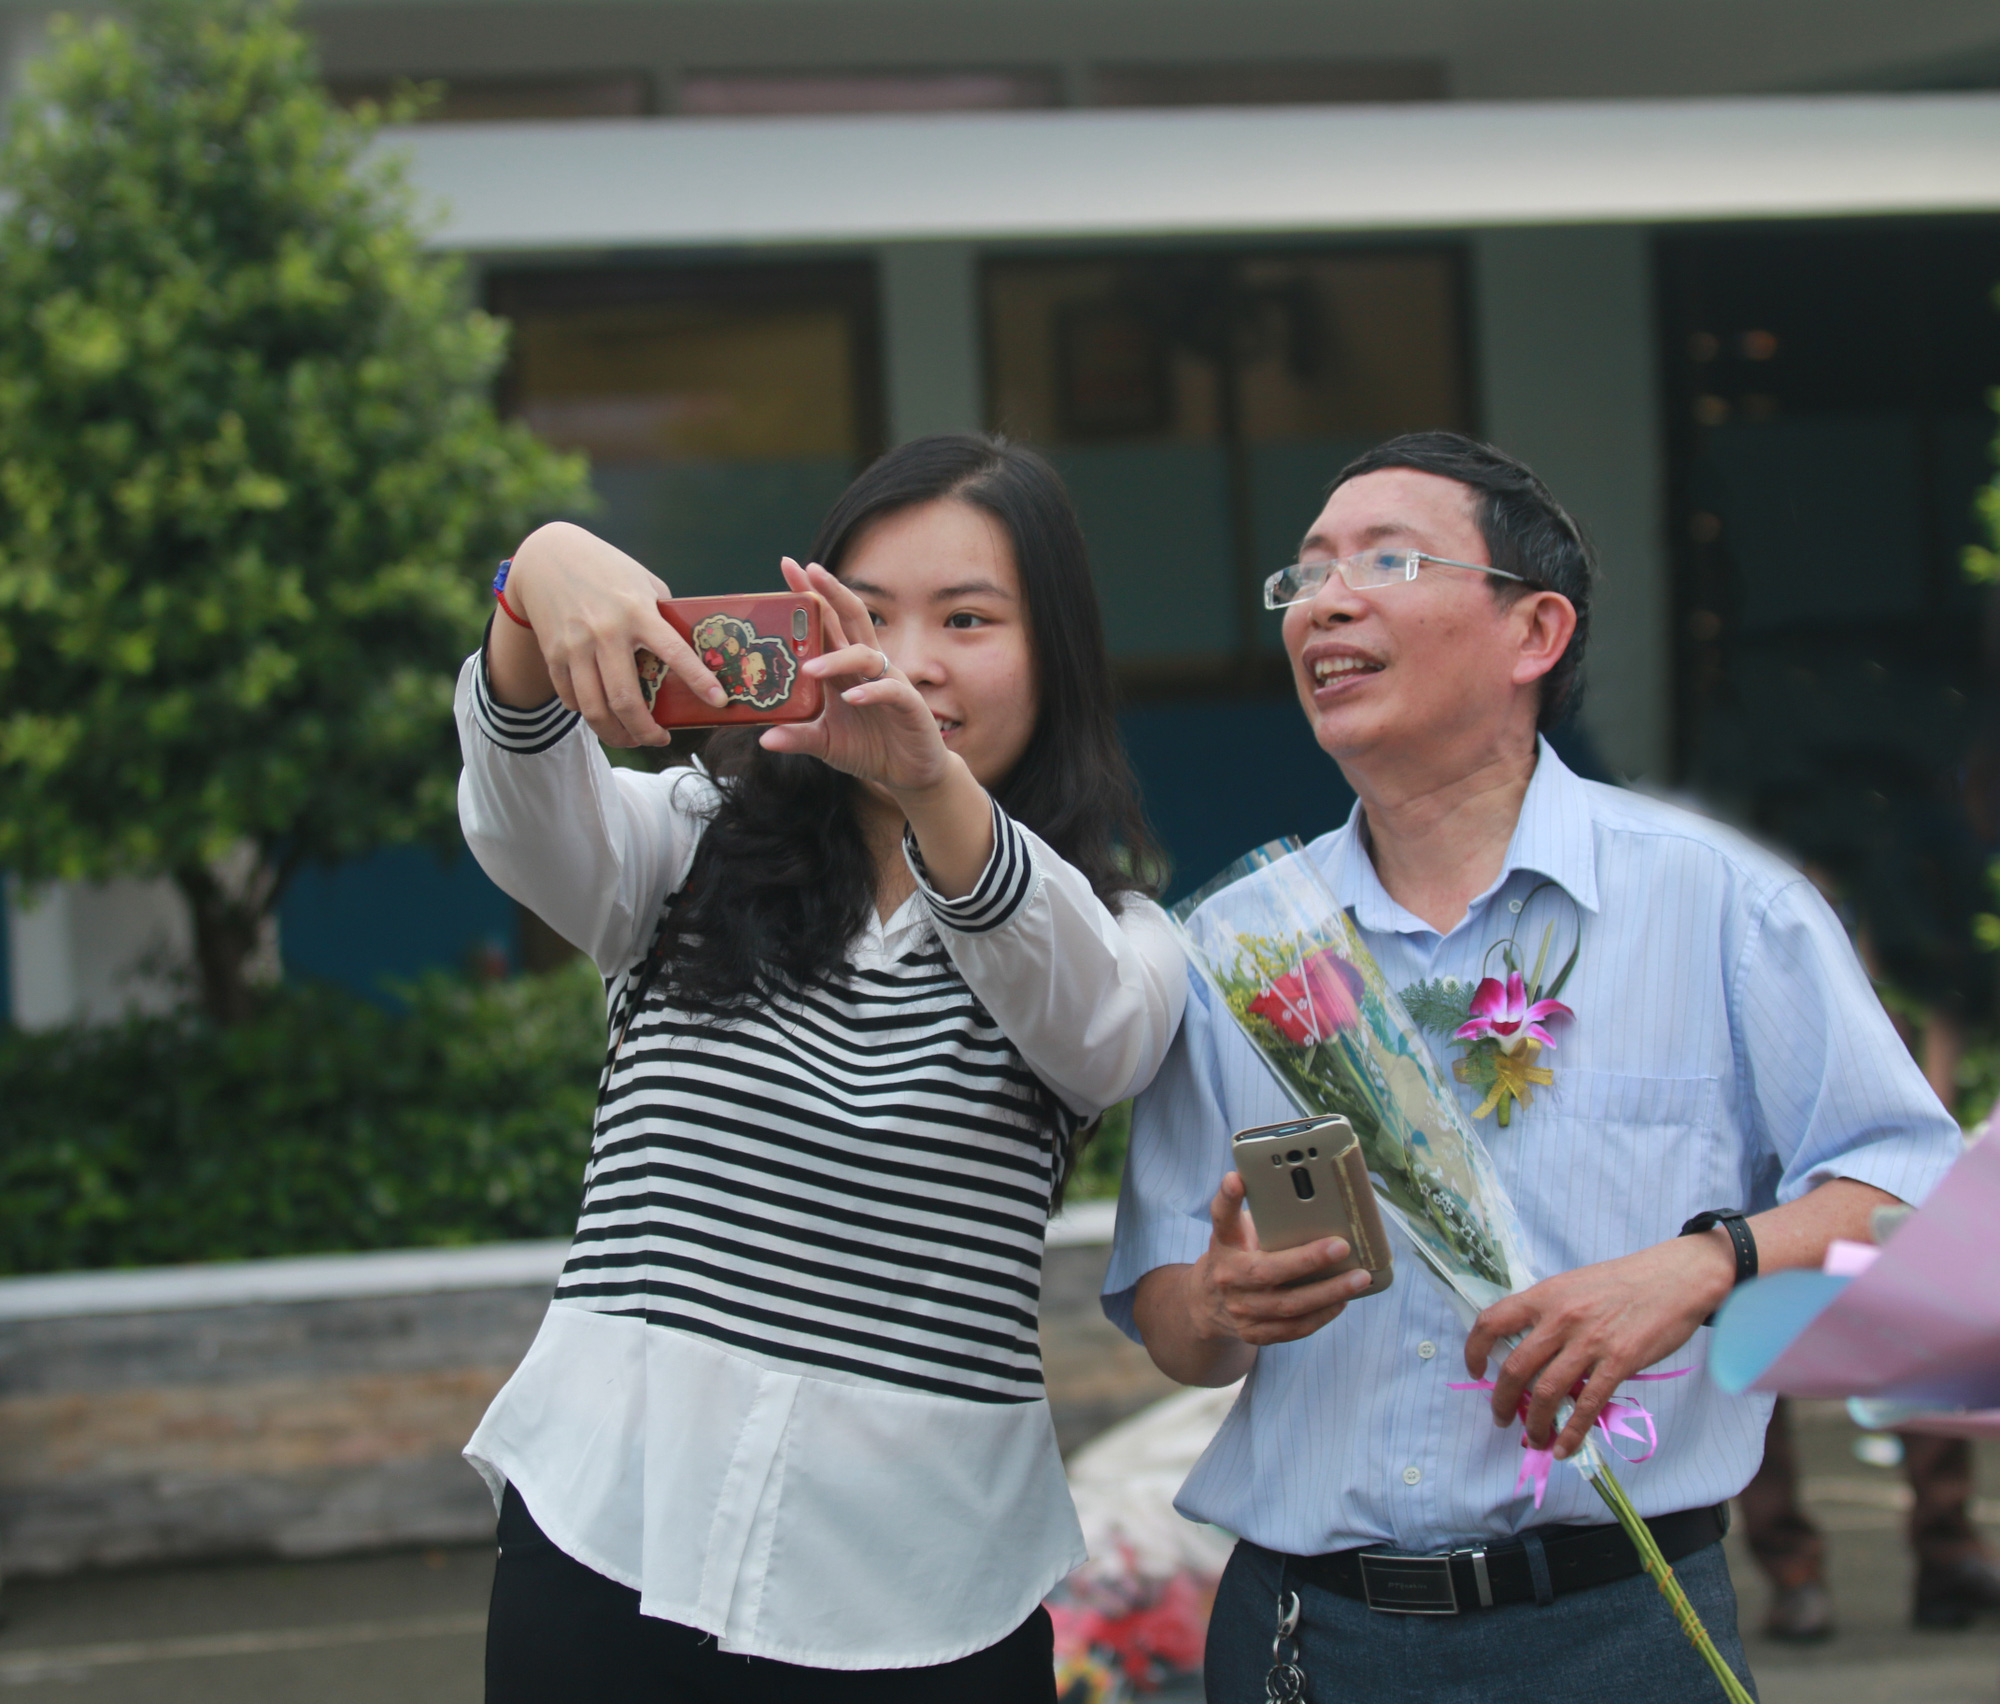 Những người giáo viên Việt Nam luôn đóng vai trò quan trọng trong sự phát triển của xã hội. Bức ảnh này sẽ giúp bạn đánh giá cao công lao và tình cảm của các giáo viên Việt Nam. Hãy cùng chiêm ngưỡng bức ảnh để khâm phục những người đồng hành trong cuộc đời đầy ý nghĩa này.